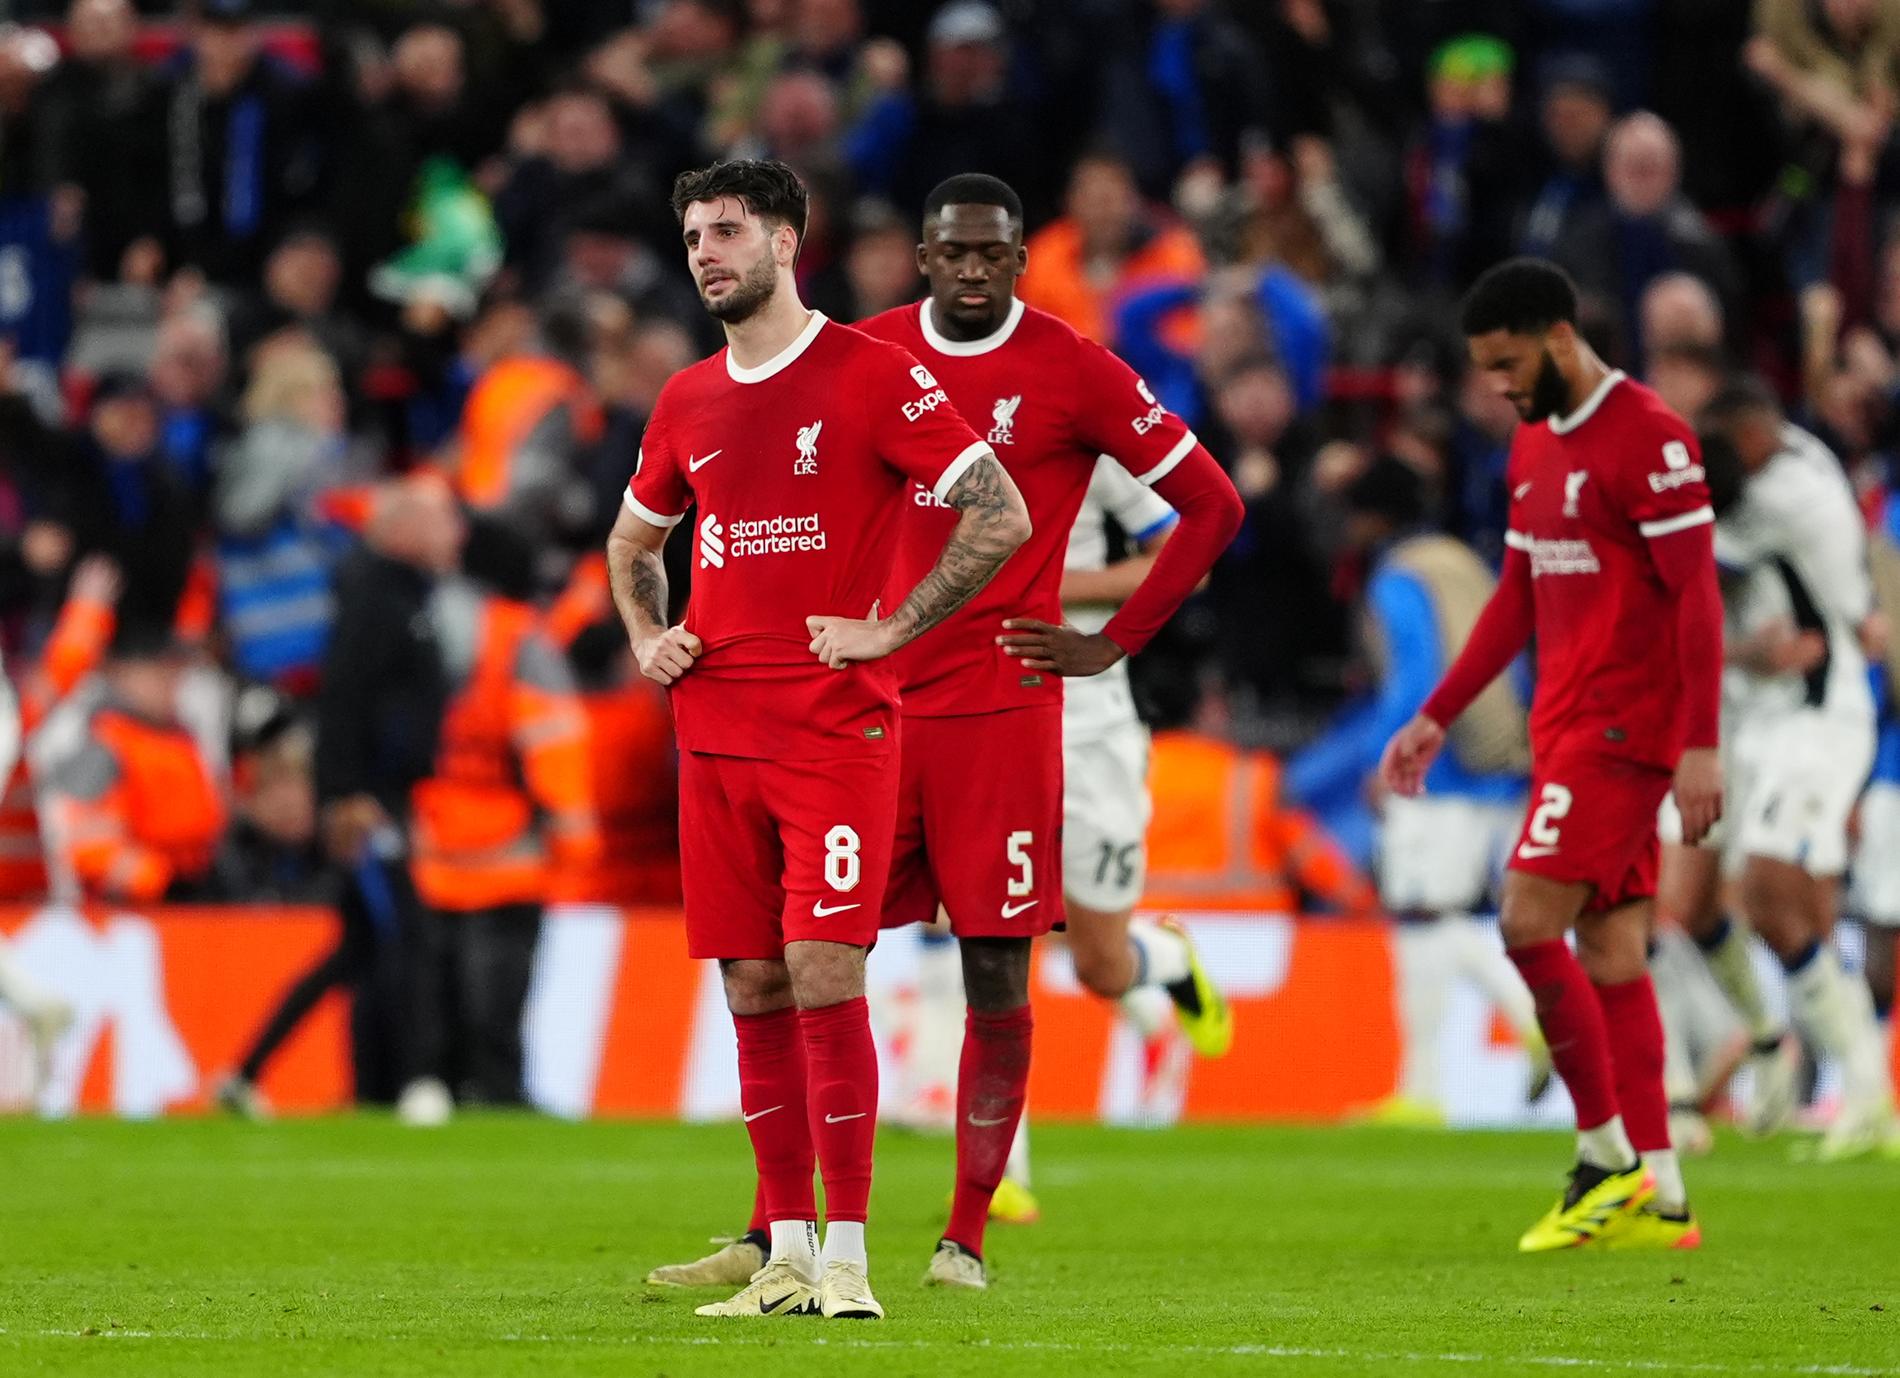 Liverpool ydmyket på hjemmebane: – Forferdelig resultat og prestasjon